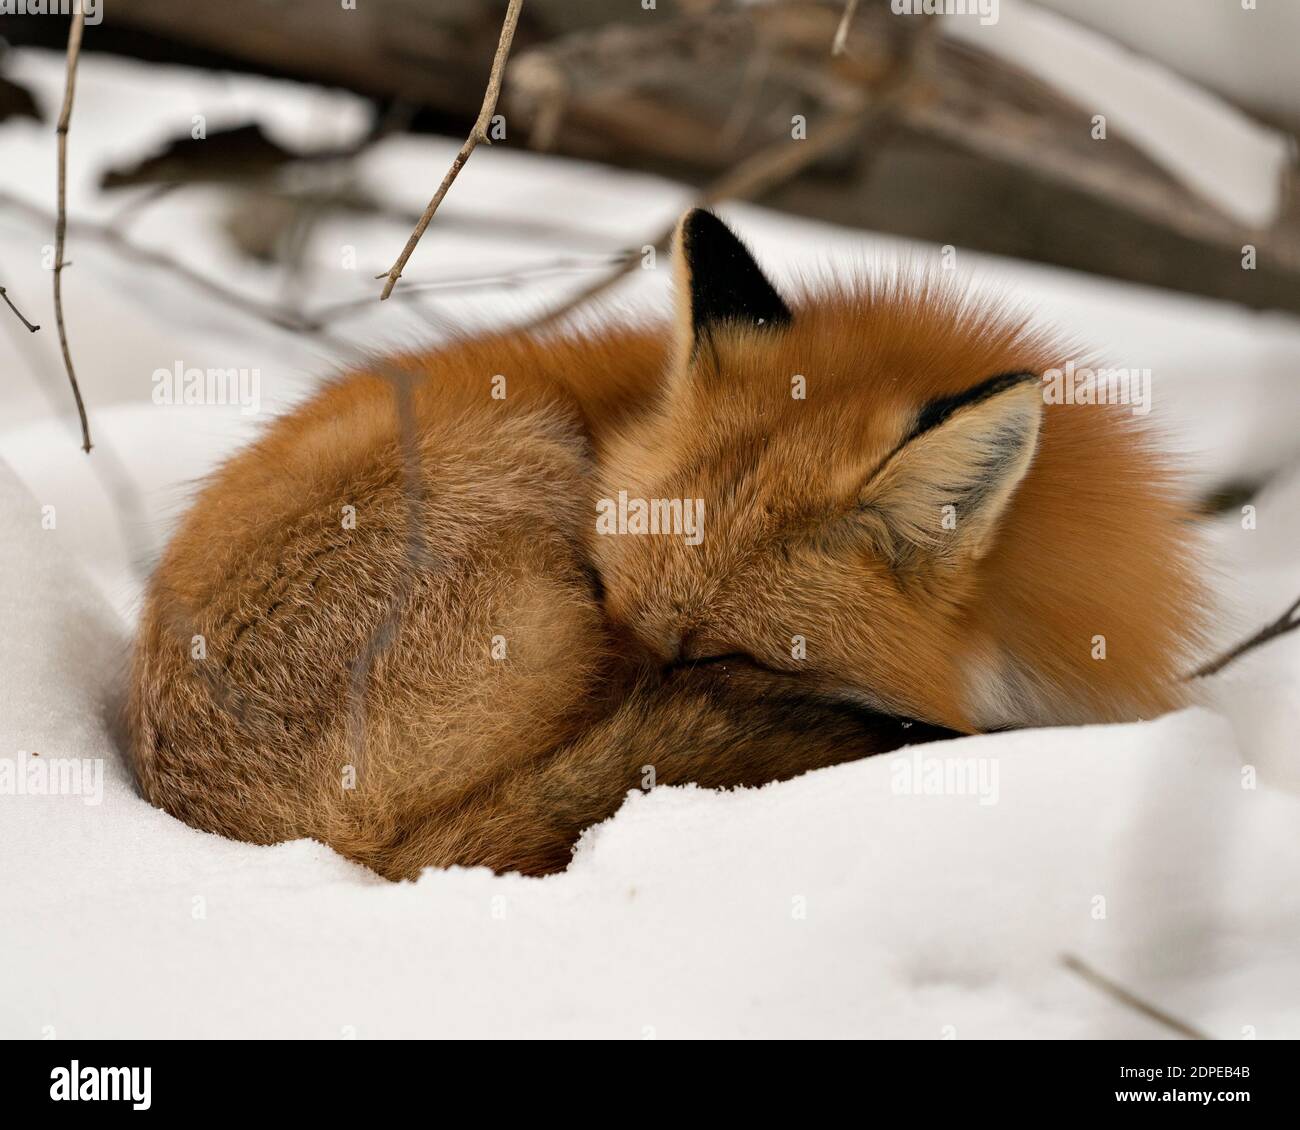 Volpe rossa dormire nella stagione invernale nel suo ambiente e habitat con fondo neve che mostra coda di volpe, pelliccia. Immagine FOX. Immagine. Verticale Foto Stock